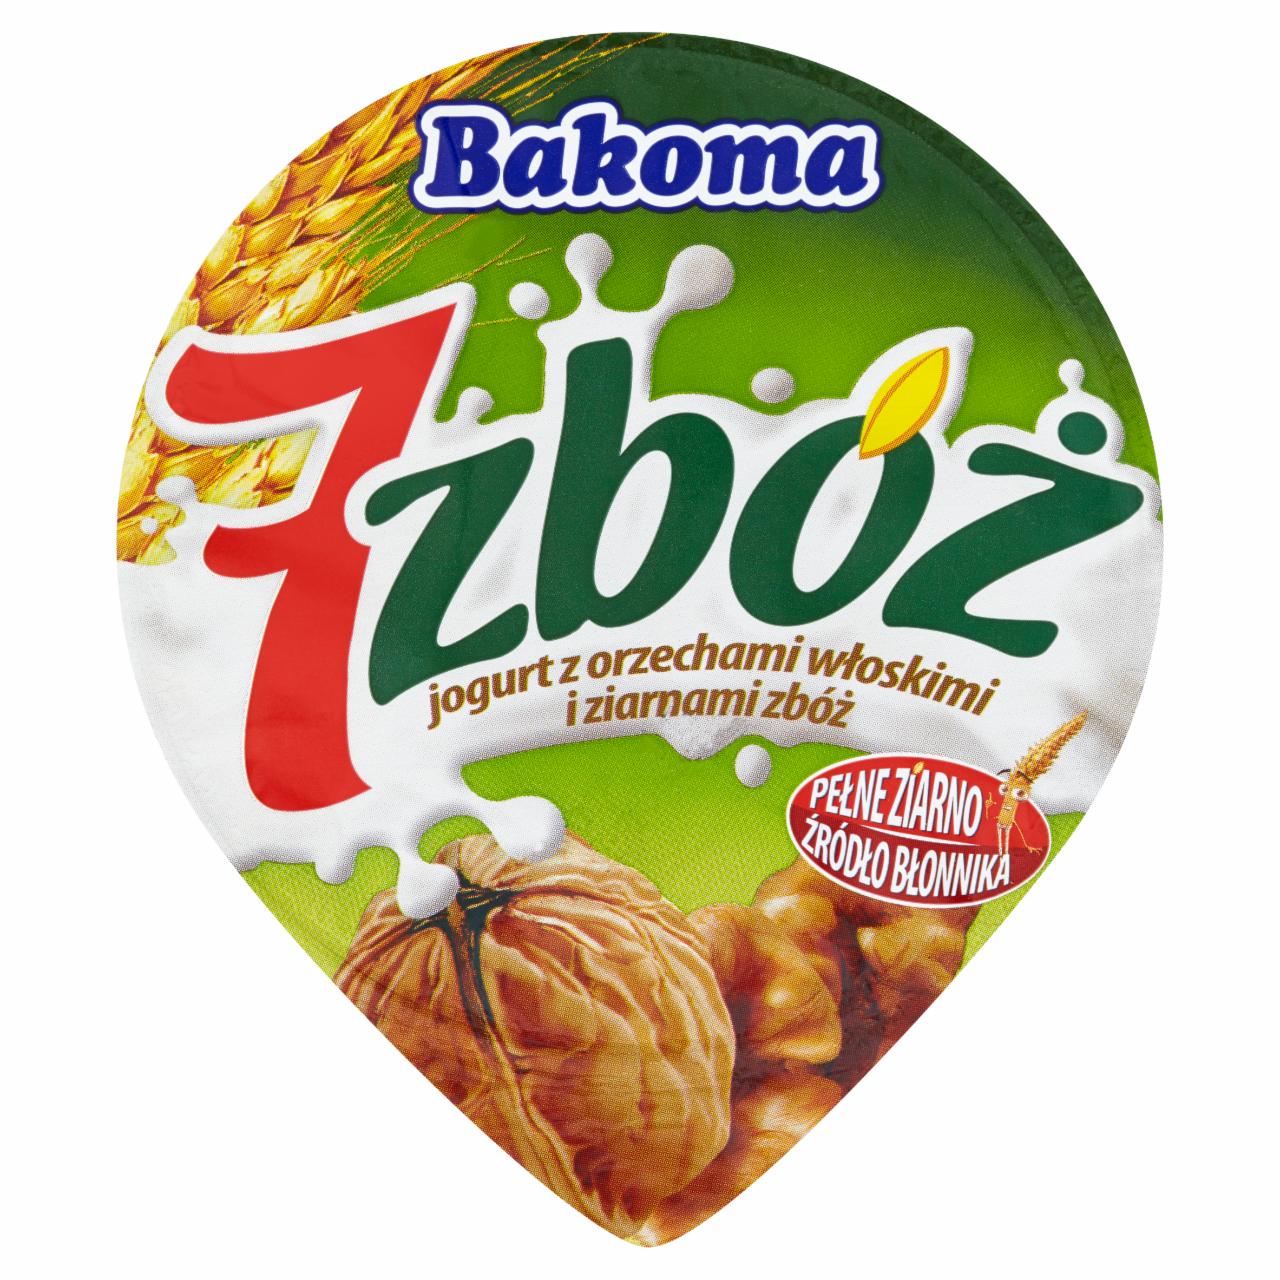 Zdjęcia - Bakoma 7 zbóż Jogurt z orzechami włoskimi i ziarnami zbóż 150 g